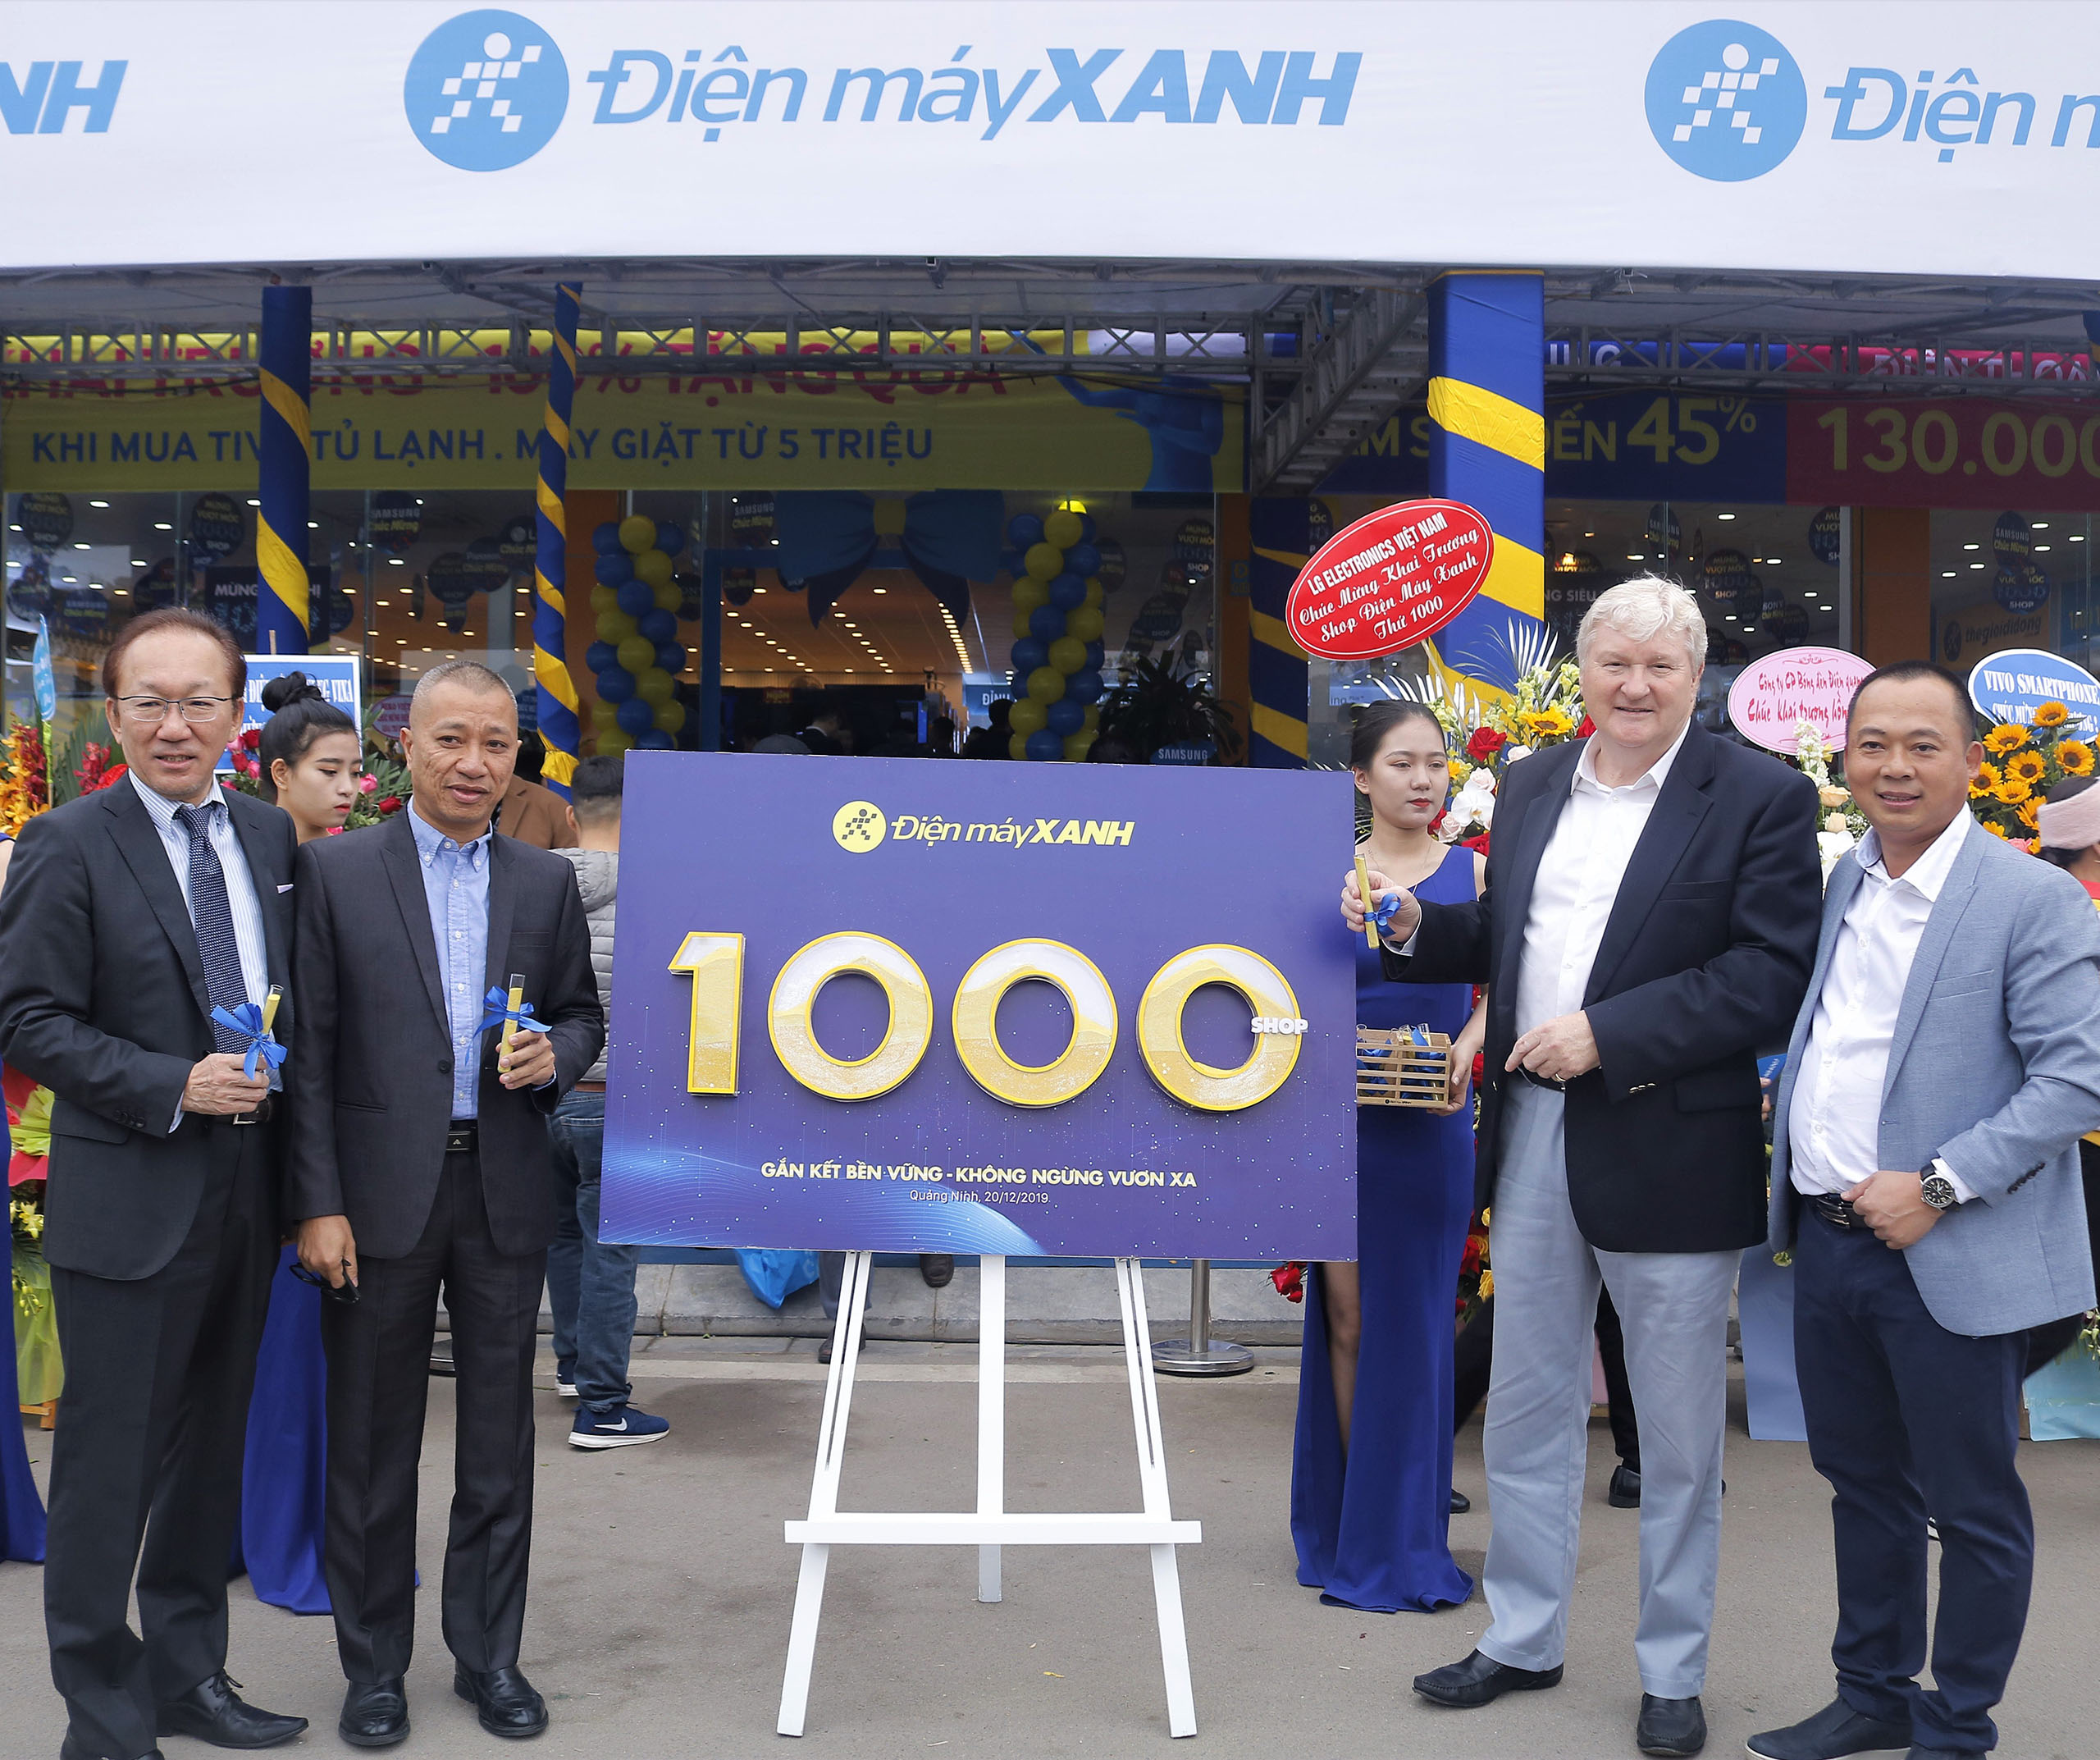 Điện Máy Xanh đạt mốc 1000 siêu thị: Ngôi vương ngành bán lẻ điện máy